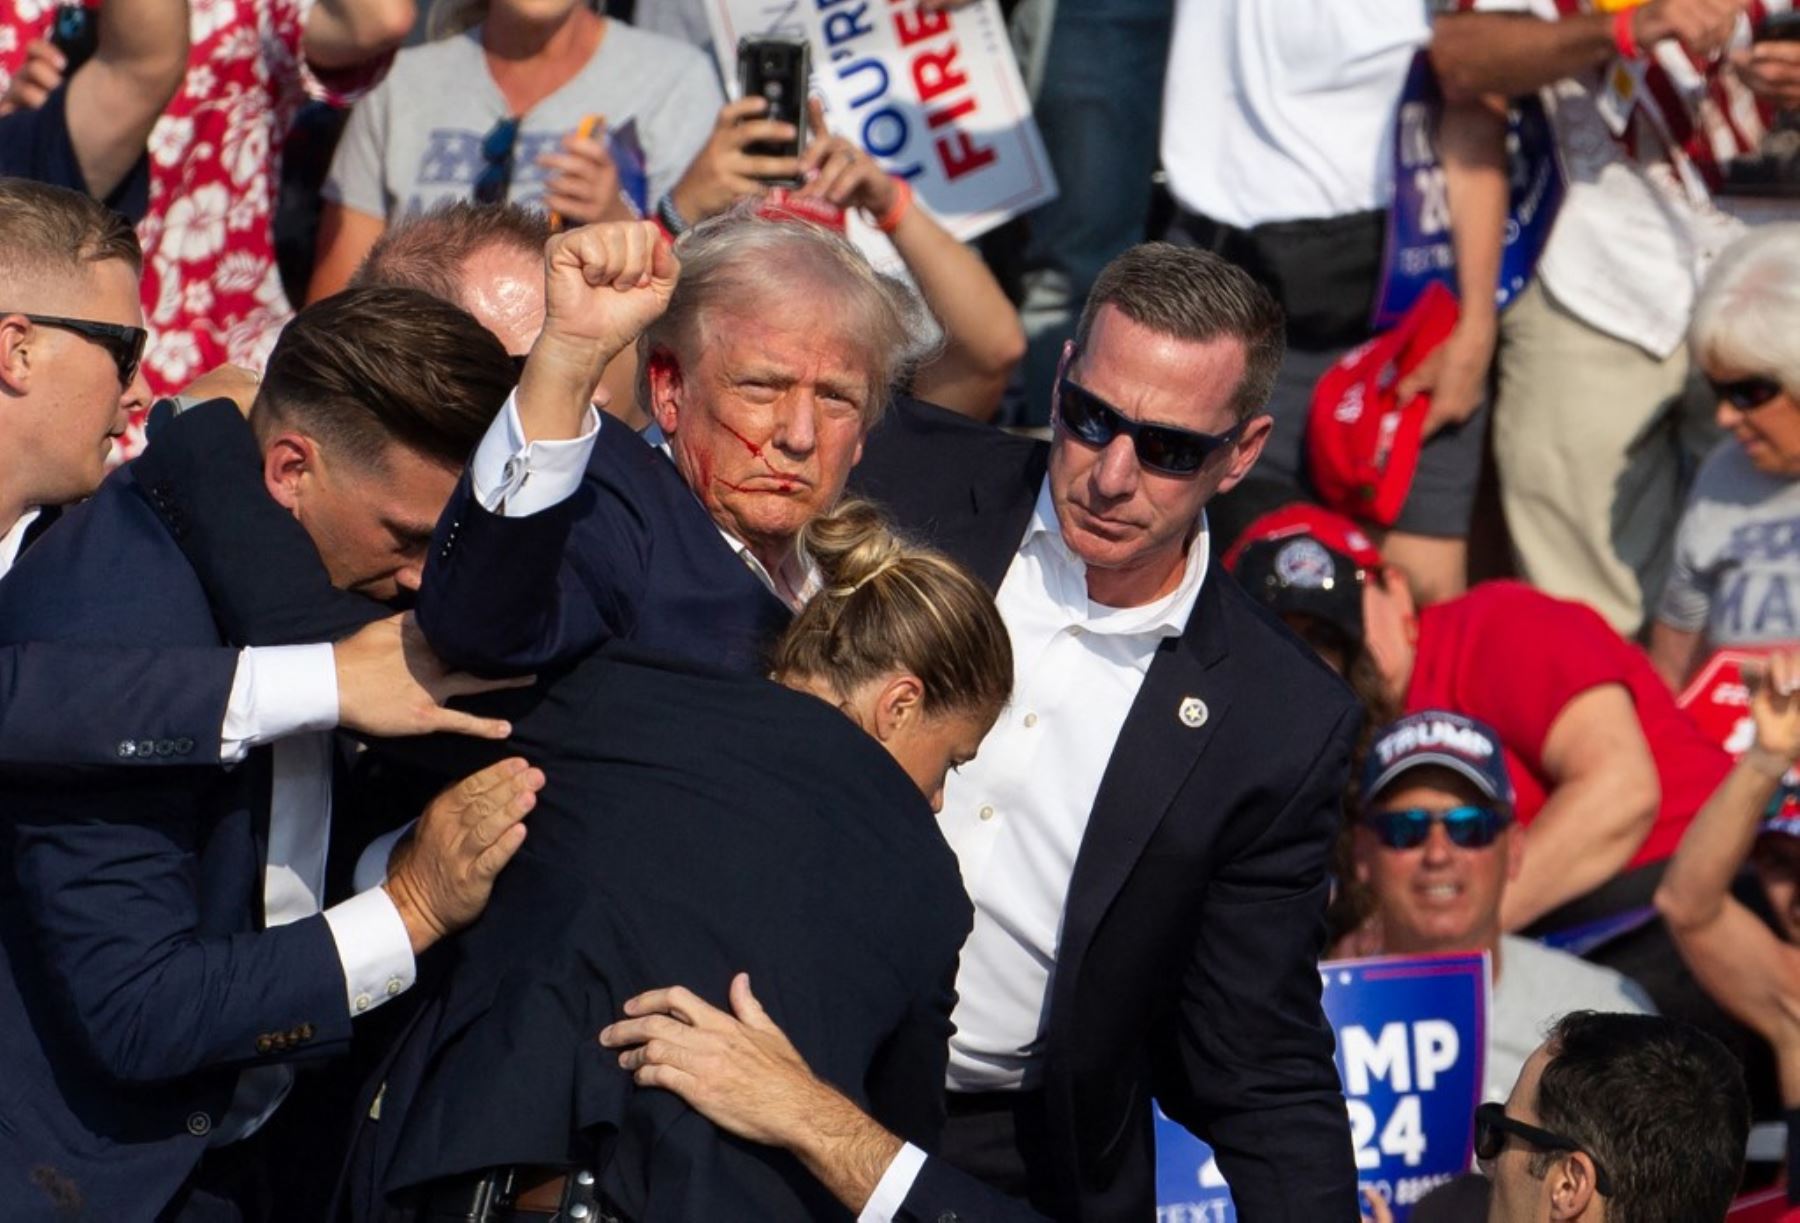 Expresidente Donald Trump es rodeado por agentes de seguridad tras disparos en Pensilvania. Foto: AFP